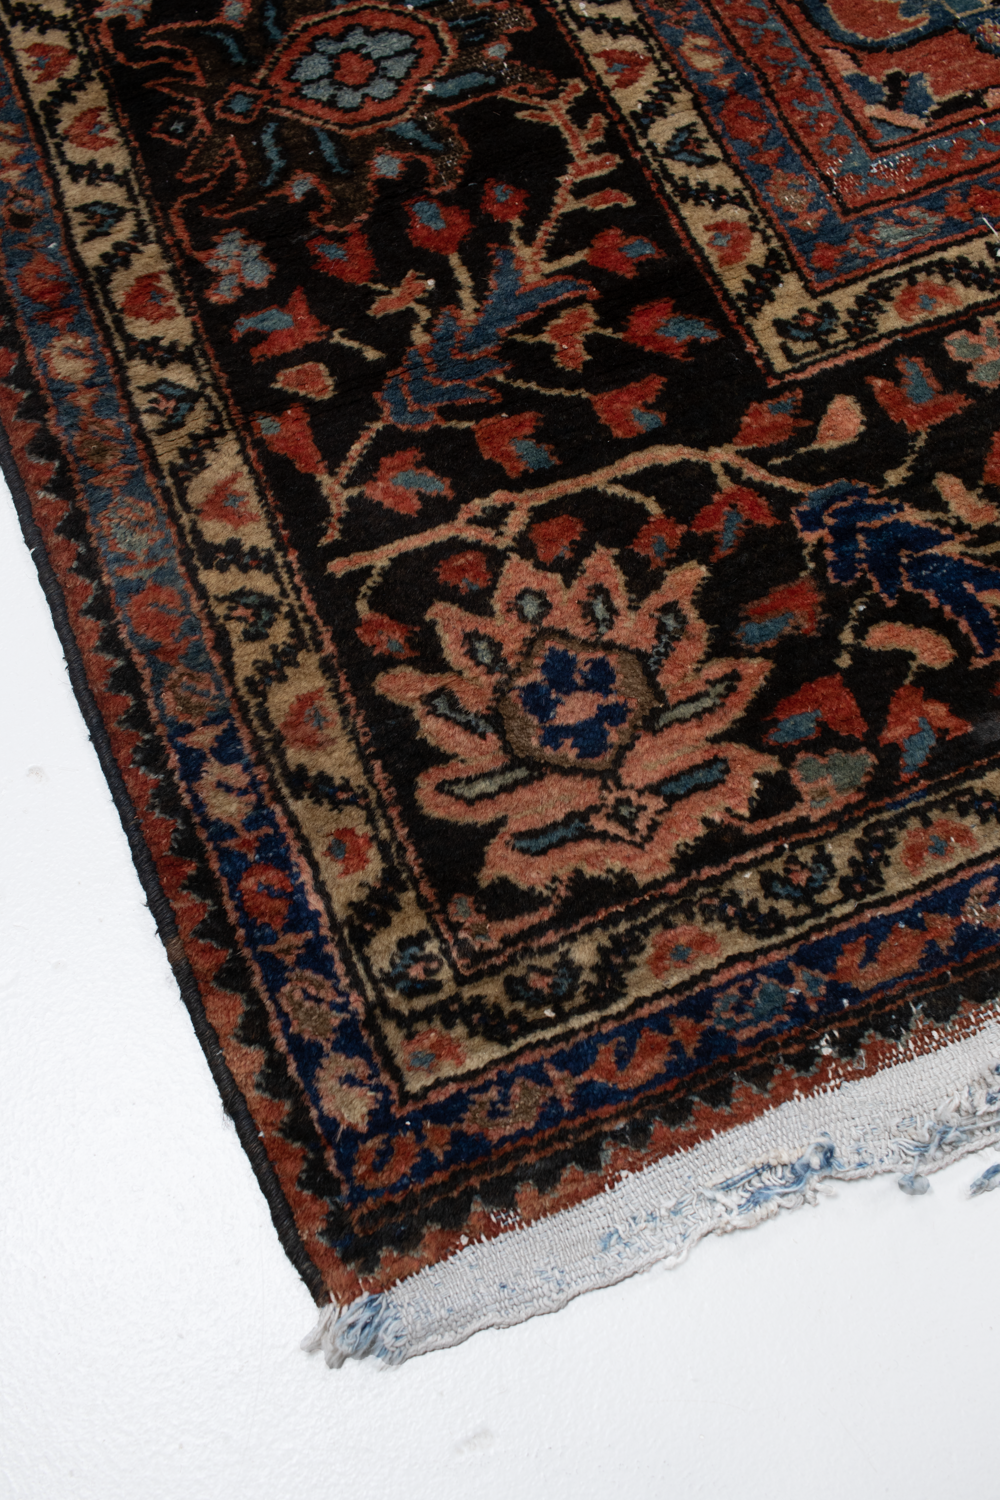 Antique Persian Lilihan Rug